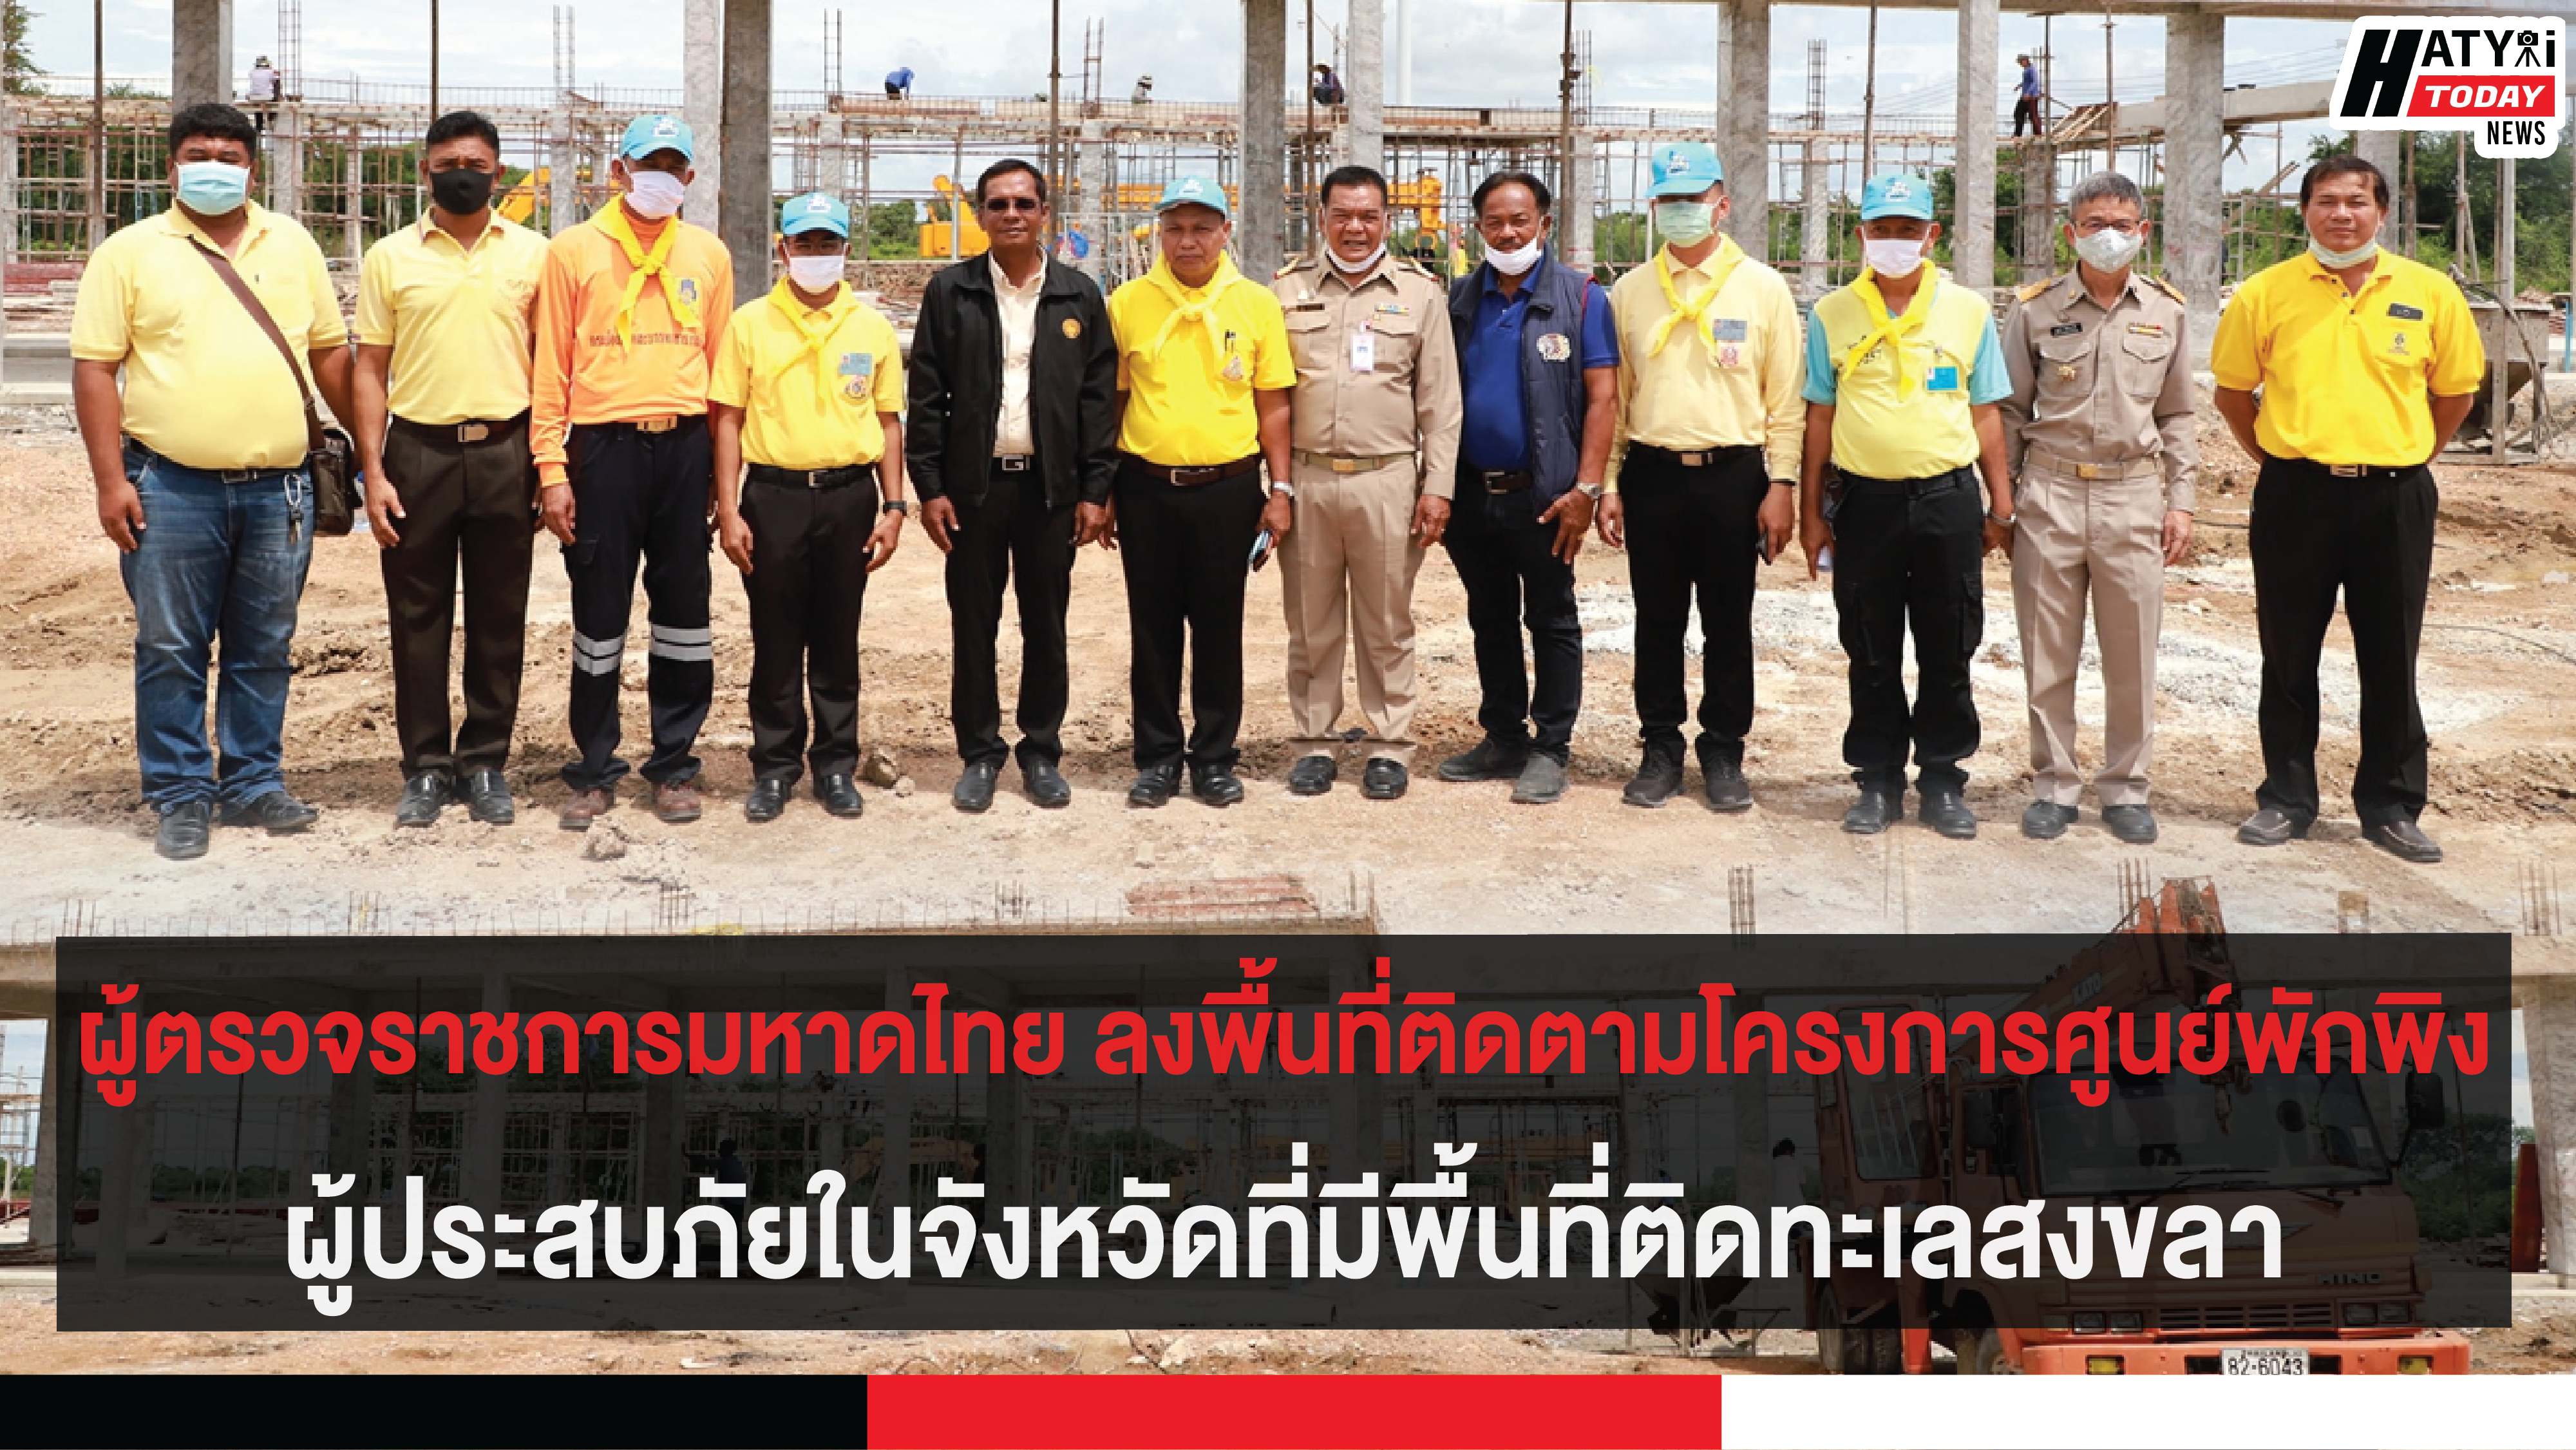 ผู้ตรวจราชการมหาดไทย ลงพื้นที่ติดตามโครงการศูนย์พักพิงผู้ประสบภัยในจังหวัดที่มีพื้นที่ติดทะเลสงขลา